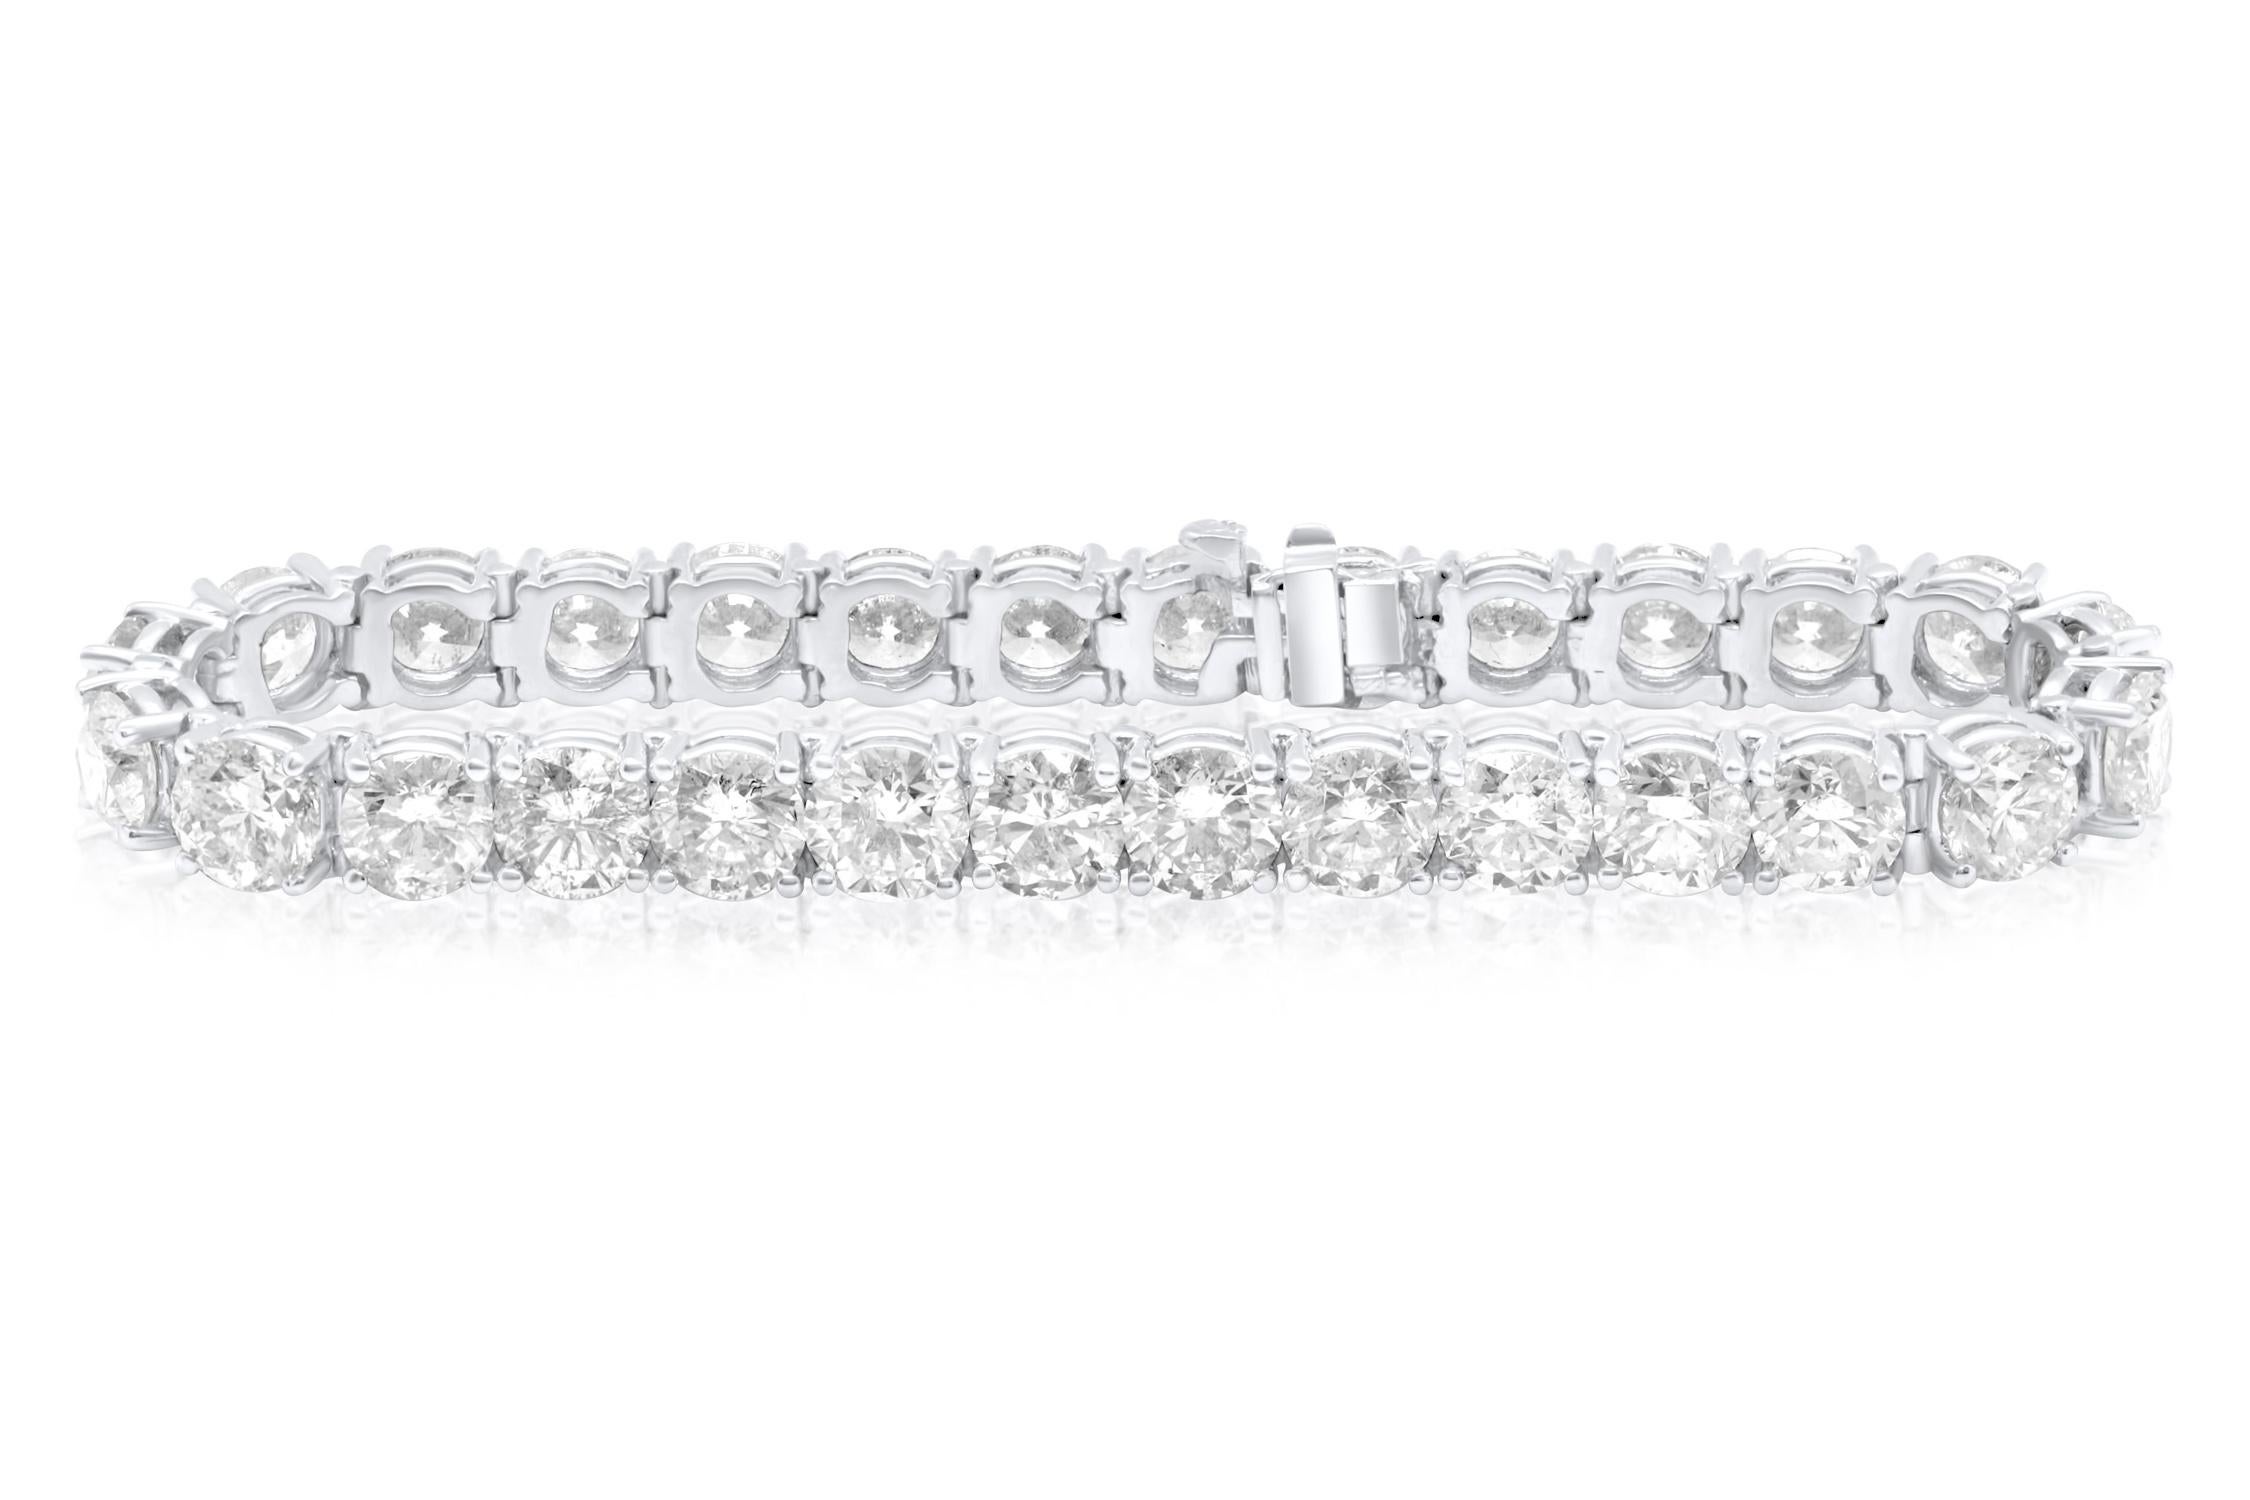 Bracelet de tennis en or blanc personnalisé 18 kt à 4 branches diamantées  13,50 cts de diamants ronds 0,35 chacun 38 pierres diamant FG couleur SI clarté.  Excellente coupe.